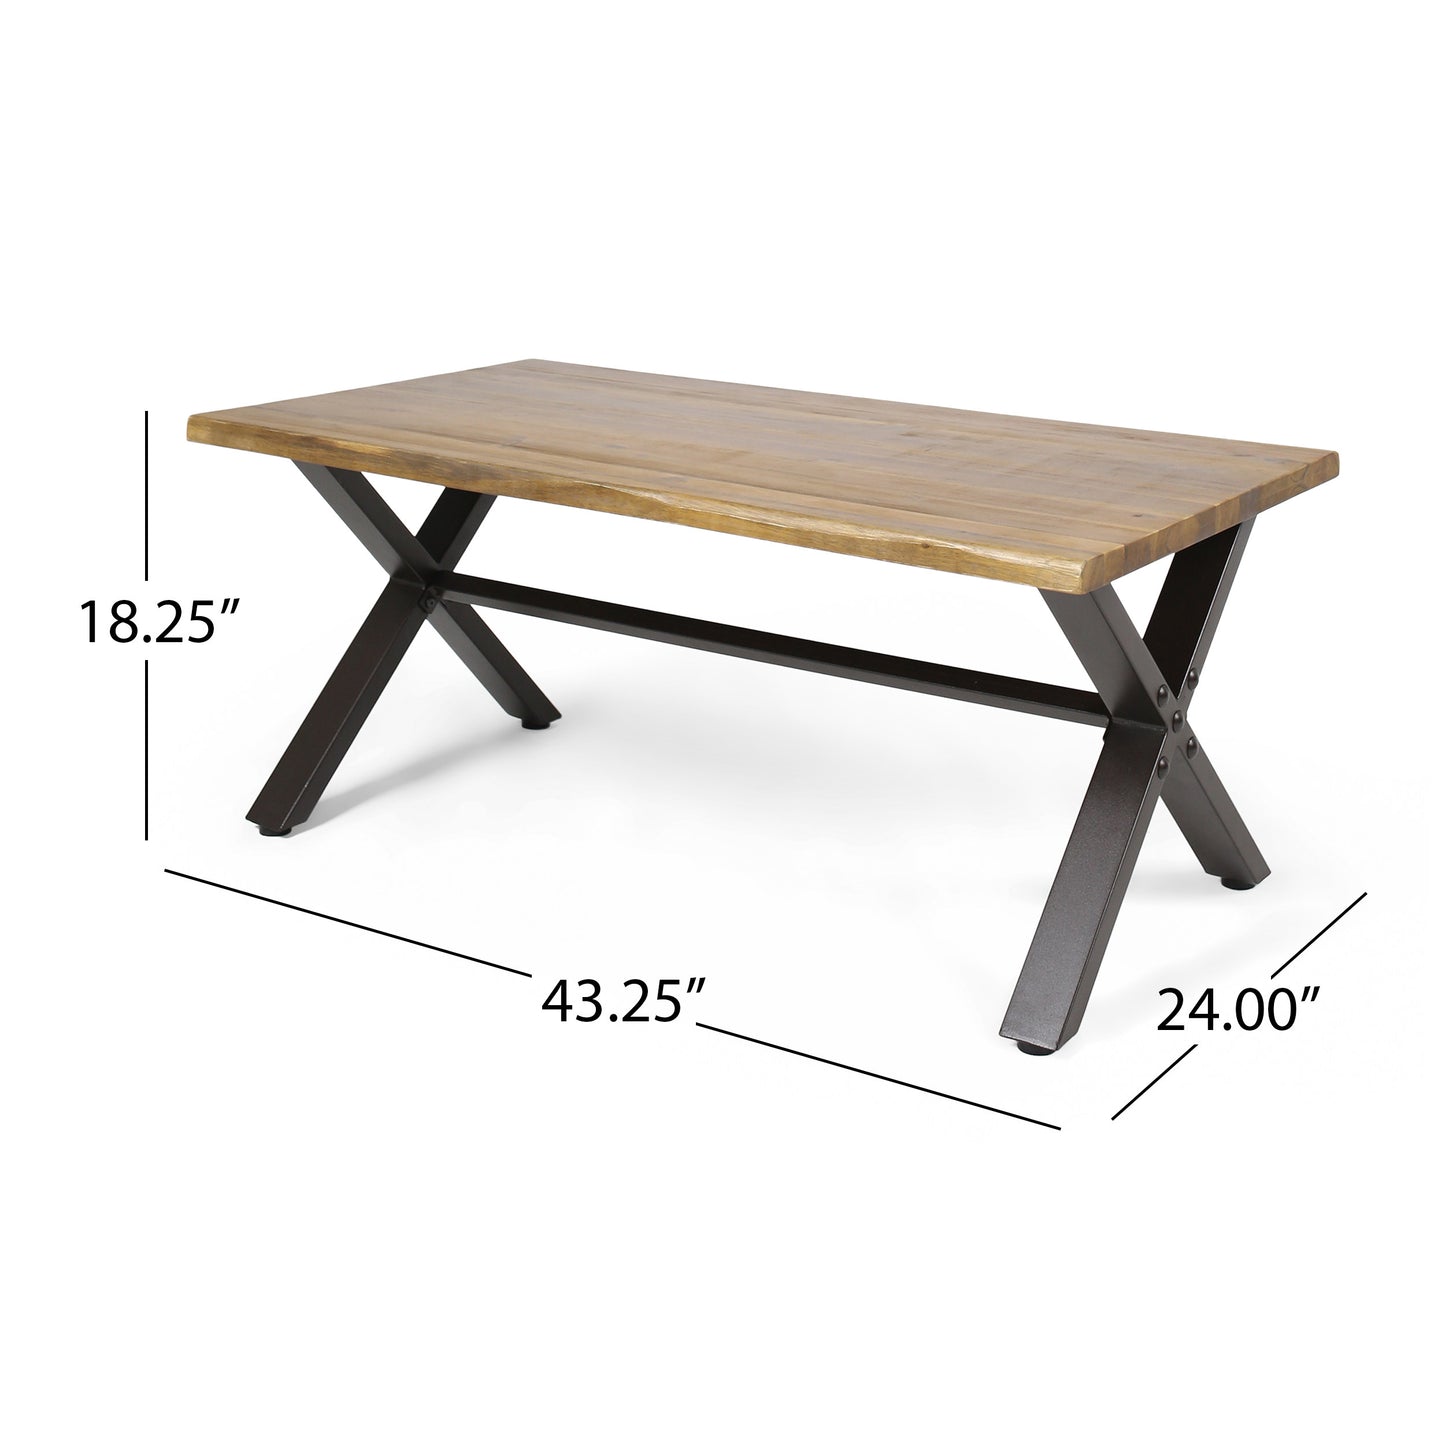 Ishtar Outdoor Farmhouse Teak Acacia Wood Coffee Table with Black X-Frame Legs